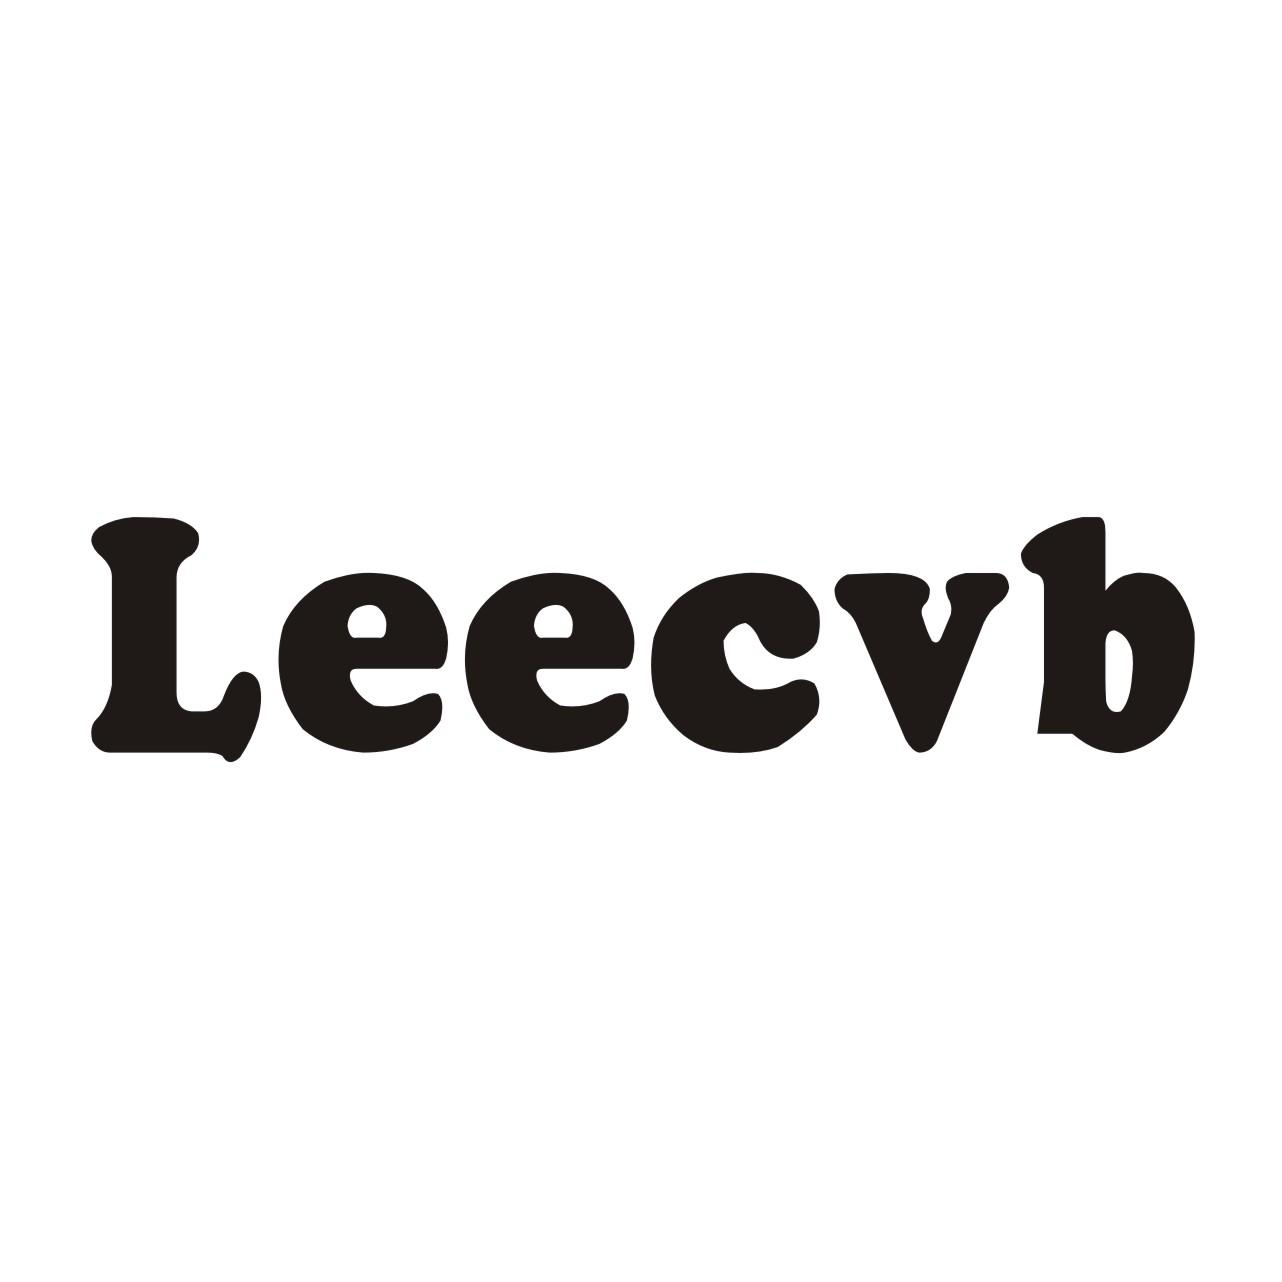 Leecvb